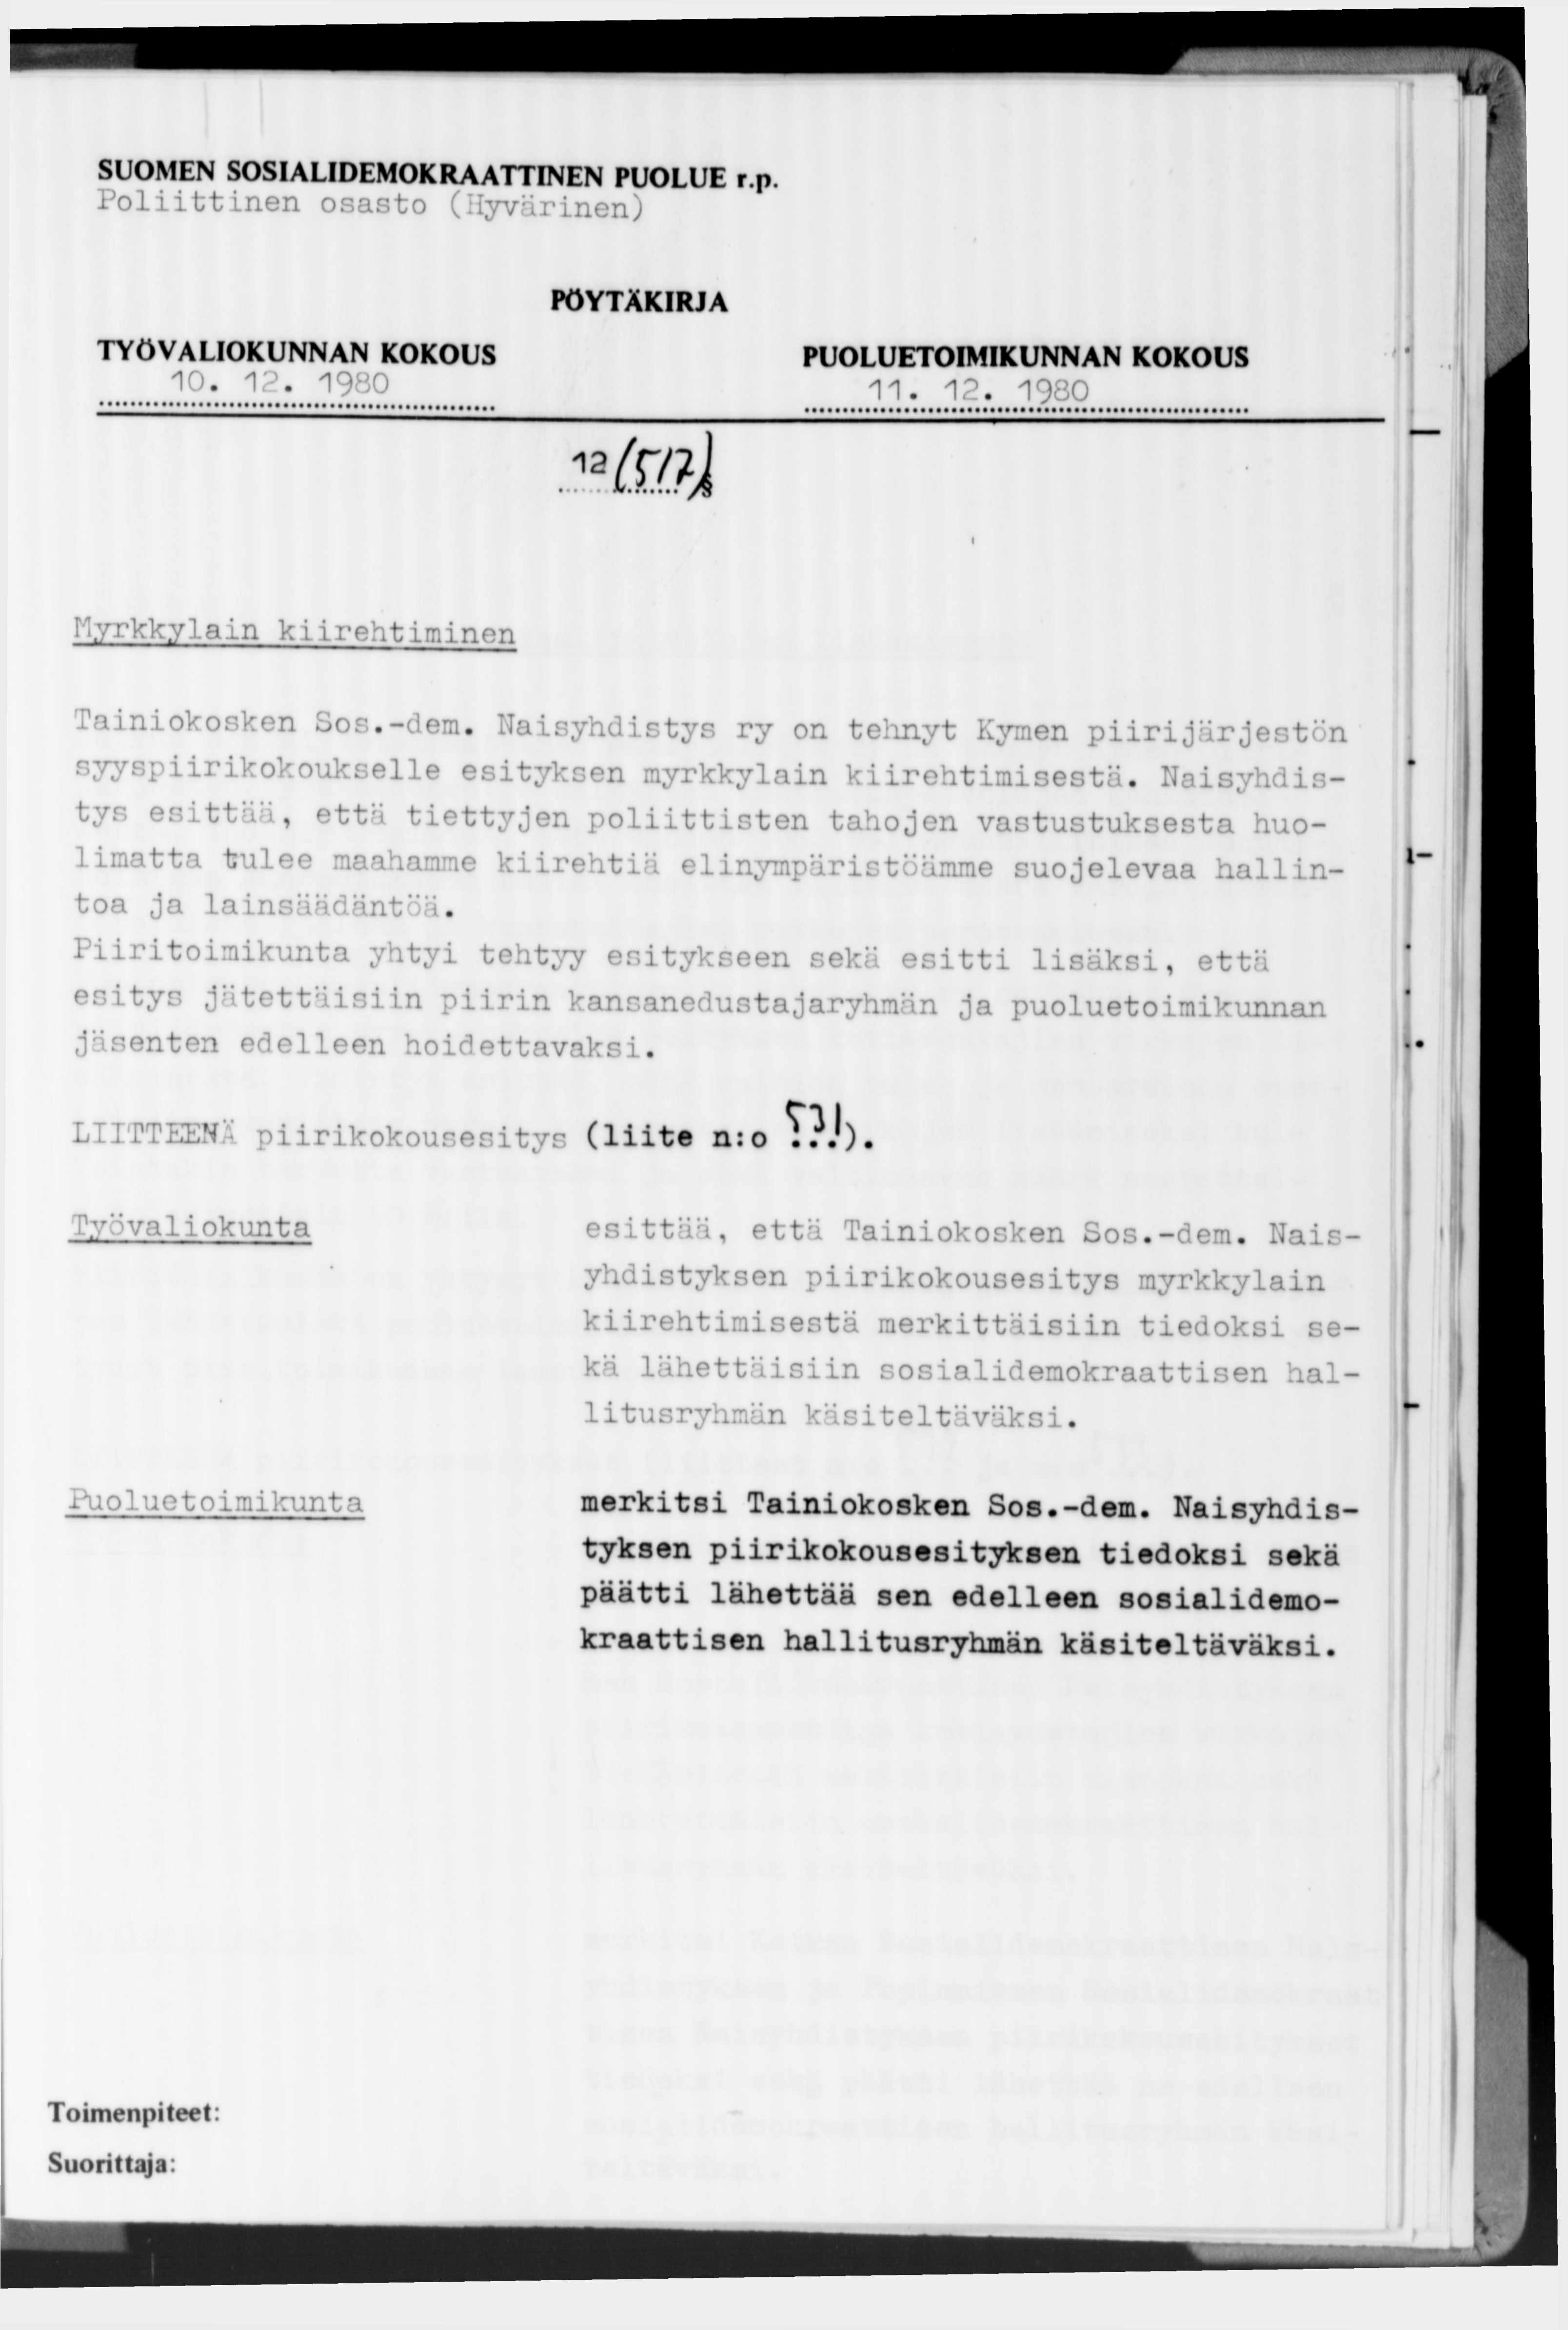 Poliittinen osasto (Hyvärinen) 10. 12. 1980 11. 12. 1980 12 ш Myrkkylain kiirehtiminen iainiokosken bos.-dem.